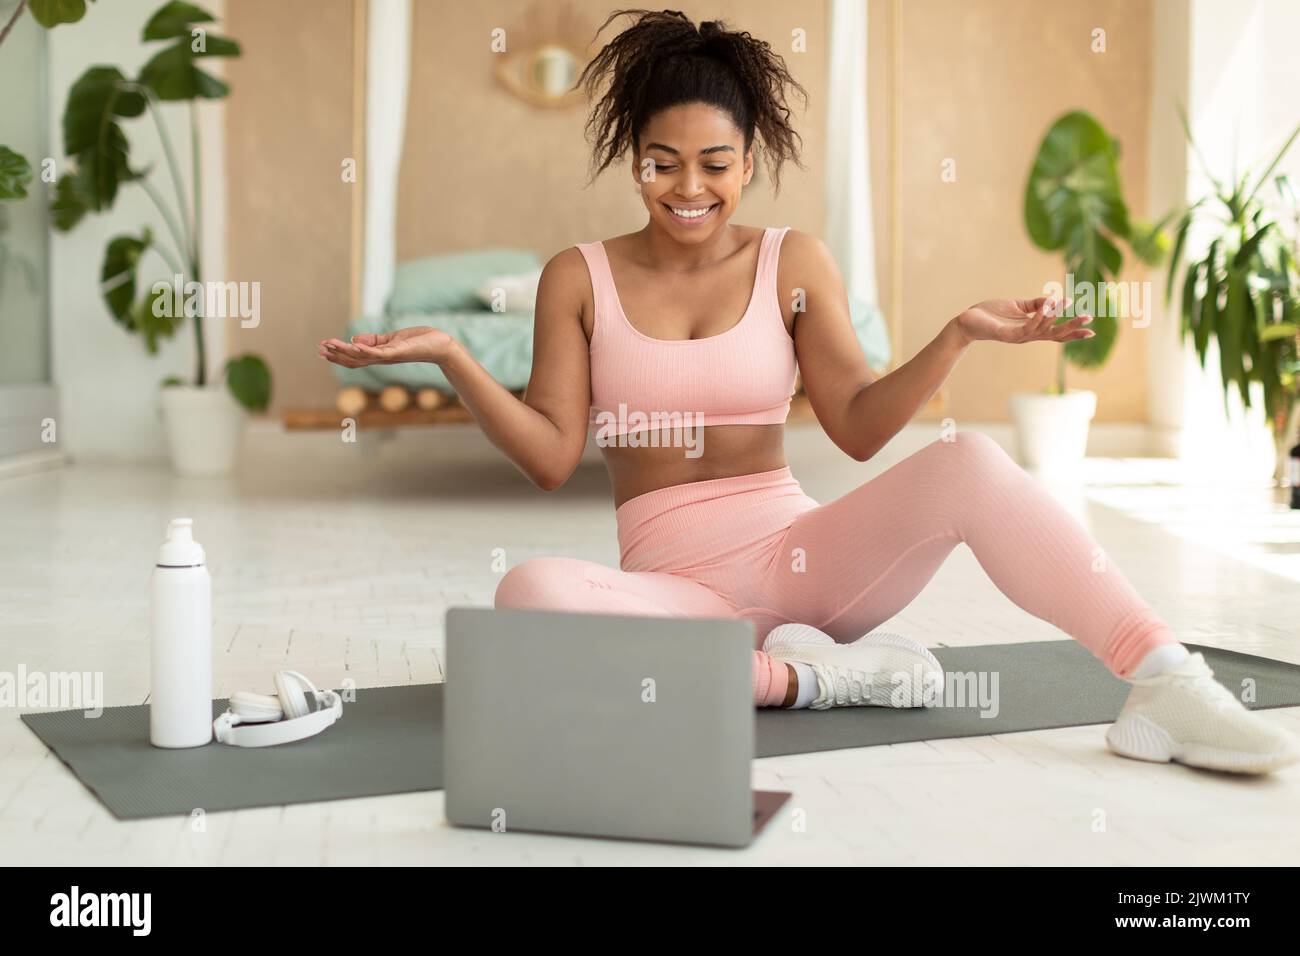 Concept de formation à distance. Bonne femme noire entraîneur ayant cours de fitness en ligne avec ordinateur portable, parlant à l'ordinateur webcam Banque D'Images